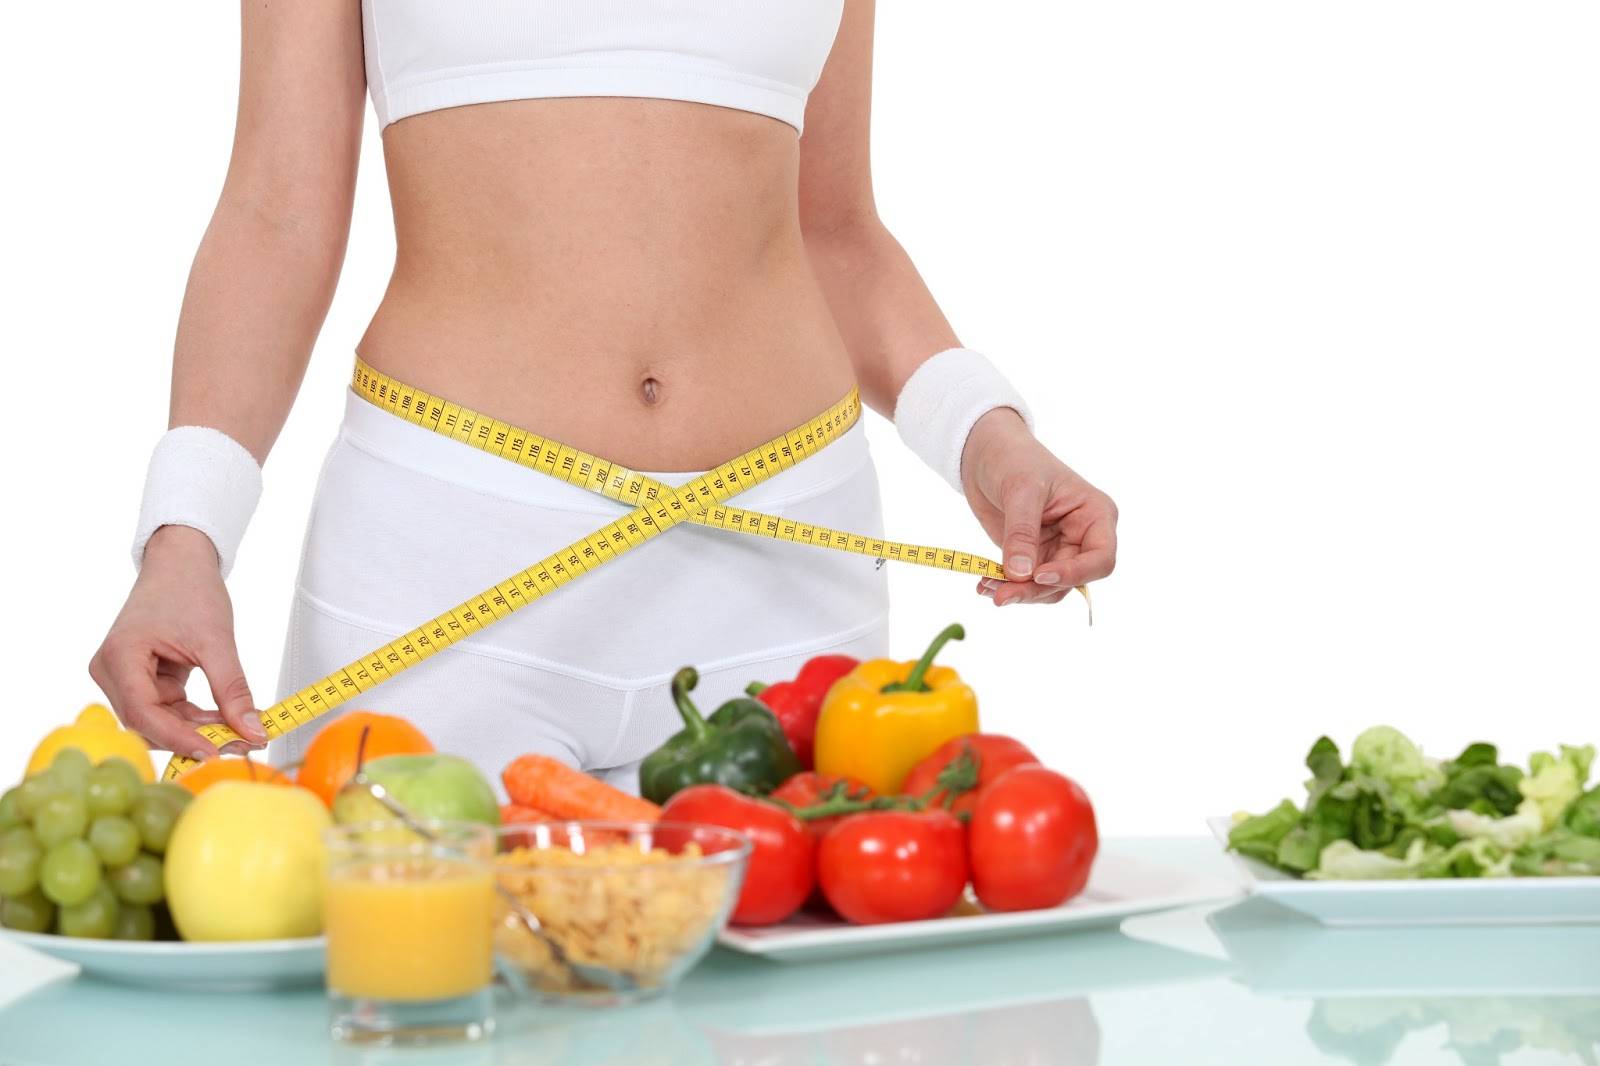 Как правильно похудеть, не угробив здоровье: подробная инструкция о том, как питаться и тренироваться